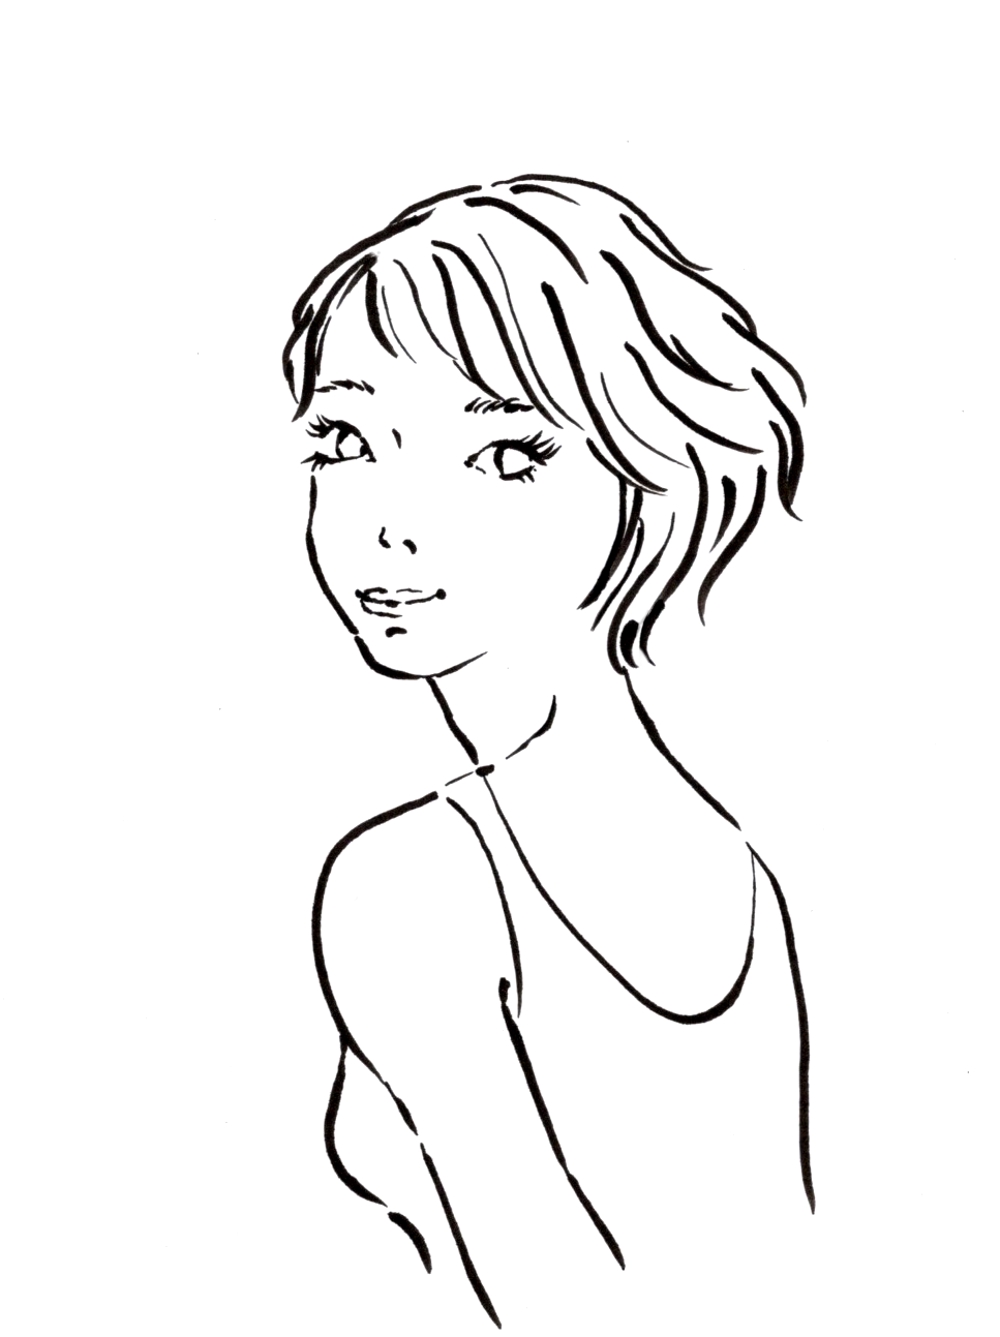 スタイリッシュな女性の線画・ラインアートイラスト募集／新規オープンのマツエクサロンのロゴに使用